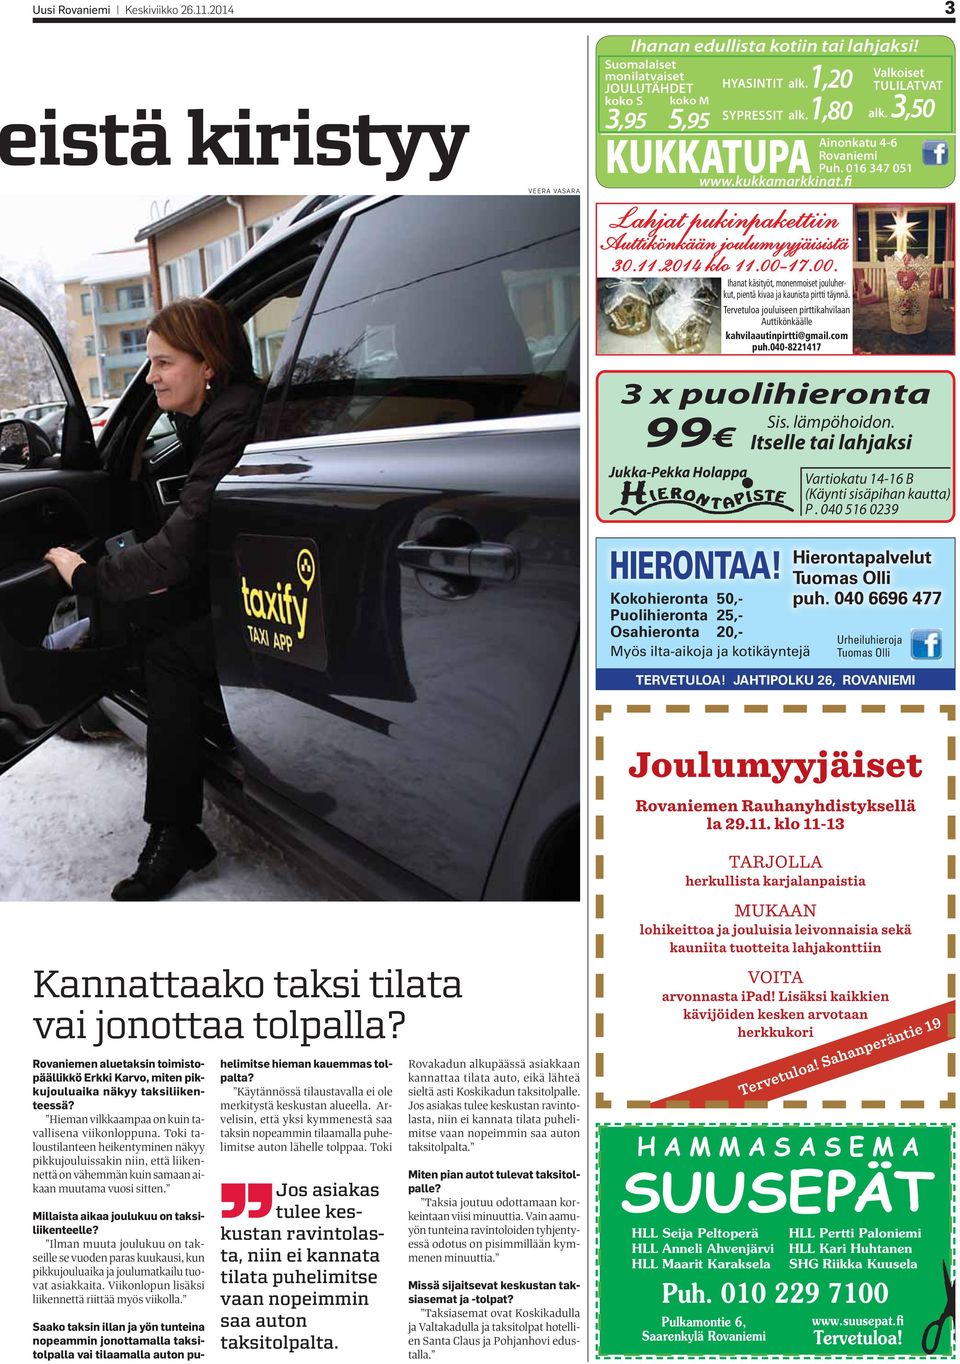 2014 klo 11.00-17.00. Jukka-Pekka Holappa Ihanat käsityöt, monenmoiset jouluherkut, pientä kivaa ja kaunista pirtti täynnä.